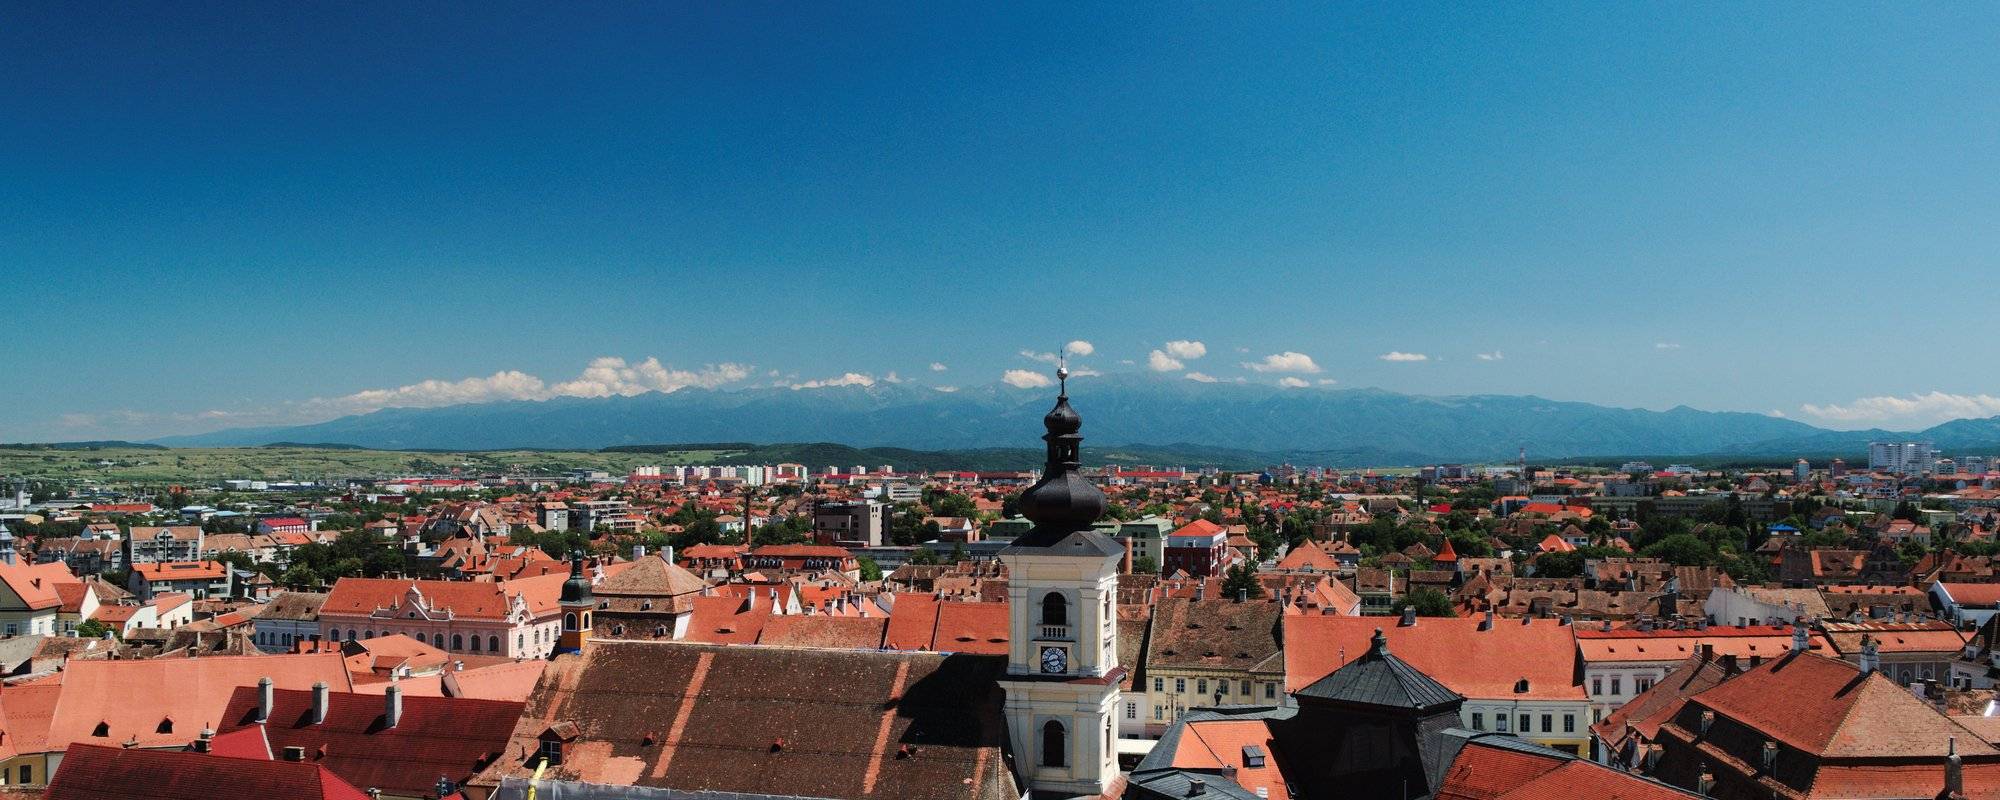 Romania for Beginners #4 - Splendid Sibiu / Rumunia dla początkujących #4 - wspaniałe Sibiu